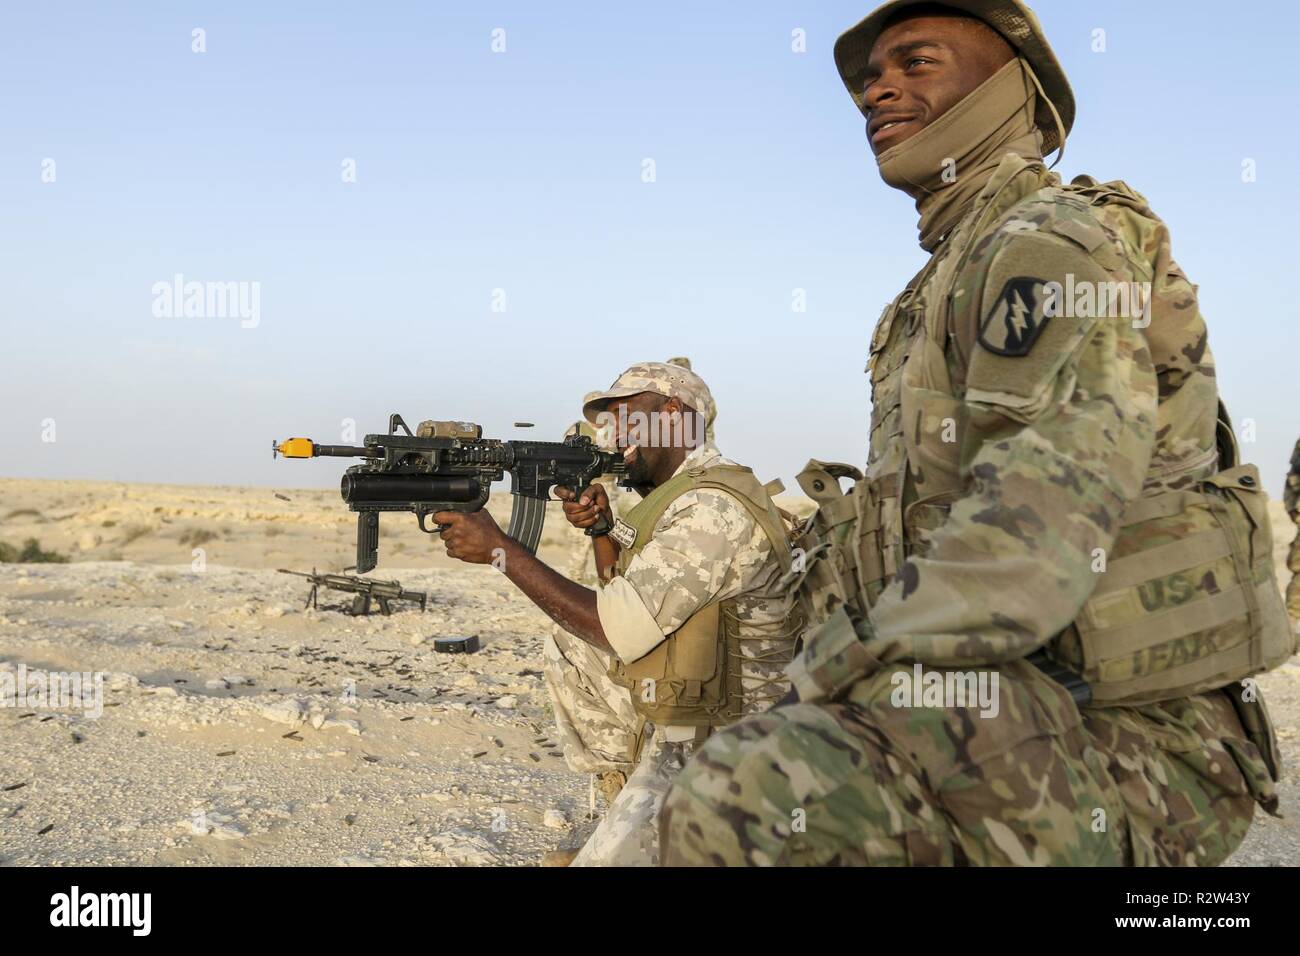 UM HATTAH, Qatar - STATI UNITI Army Spc. Jason Adams, un fante assegnati al 2° Battaglione, 198th Armor reggimento, 155Armored Brigade Combat Team, Task Force Spartan, funziona con un soldato Qatar durante il bunker di formazione di compensazione come parte di esercitare azione orientale 19 nov. 7, 2018. Azione orientale, un bi-esercizio laterale tra gli Stati Uniti e il Qatar, combina le due forze attraverso una serie di eventi di formazione come Malta, cecchino di fanteria, e più. Foto Stock